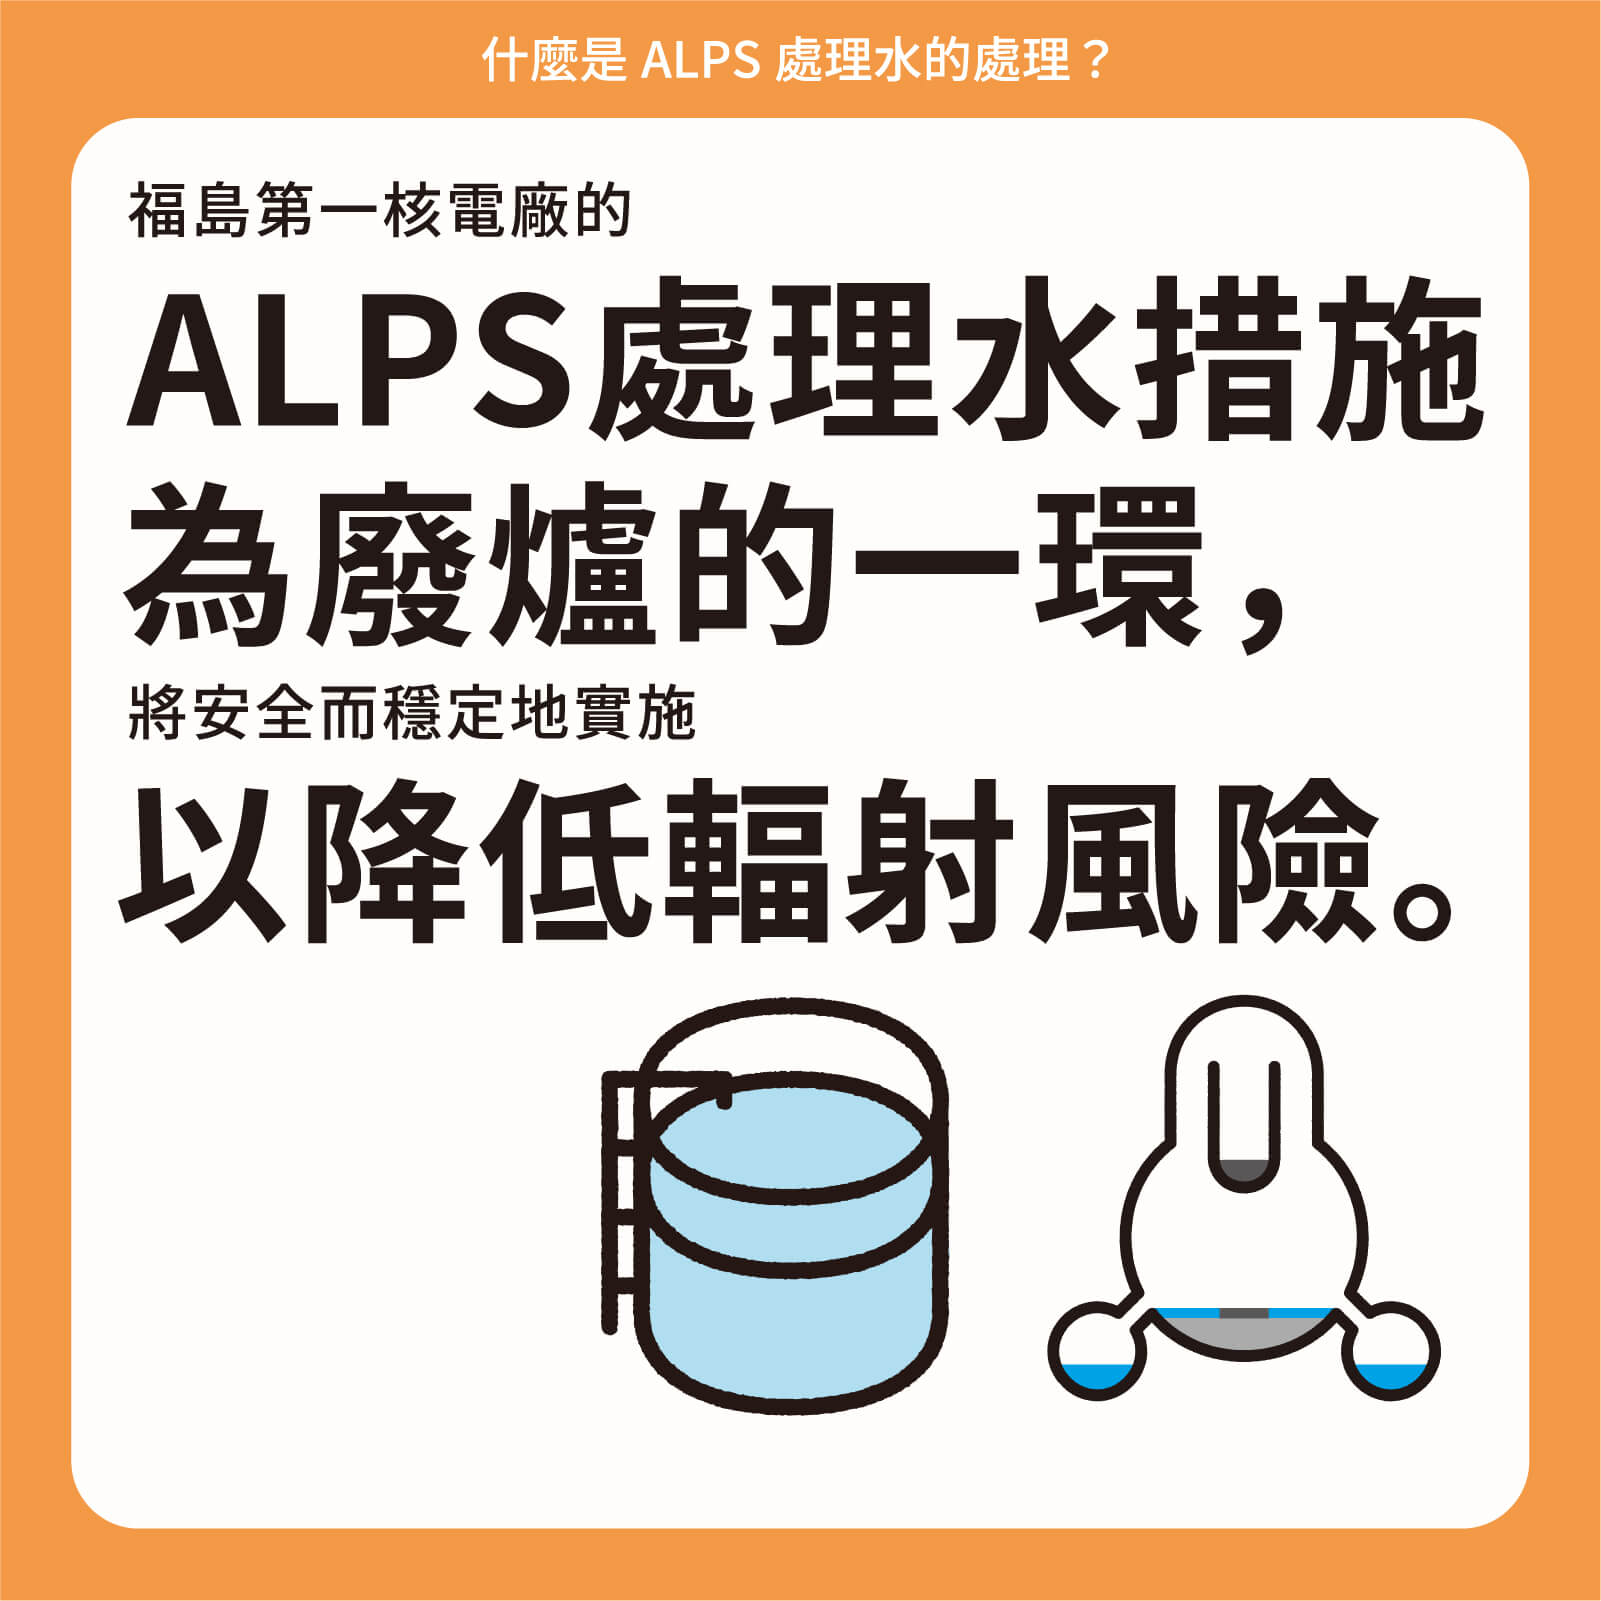 福島第一核電廠的ALPS處理水措施為廢爐的一環，將安全而穩定地實施以降低輻射風險。